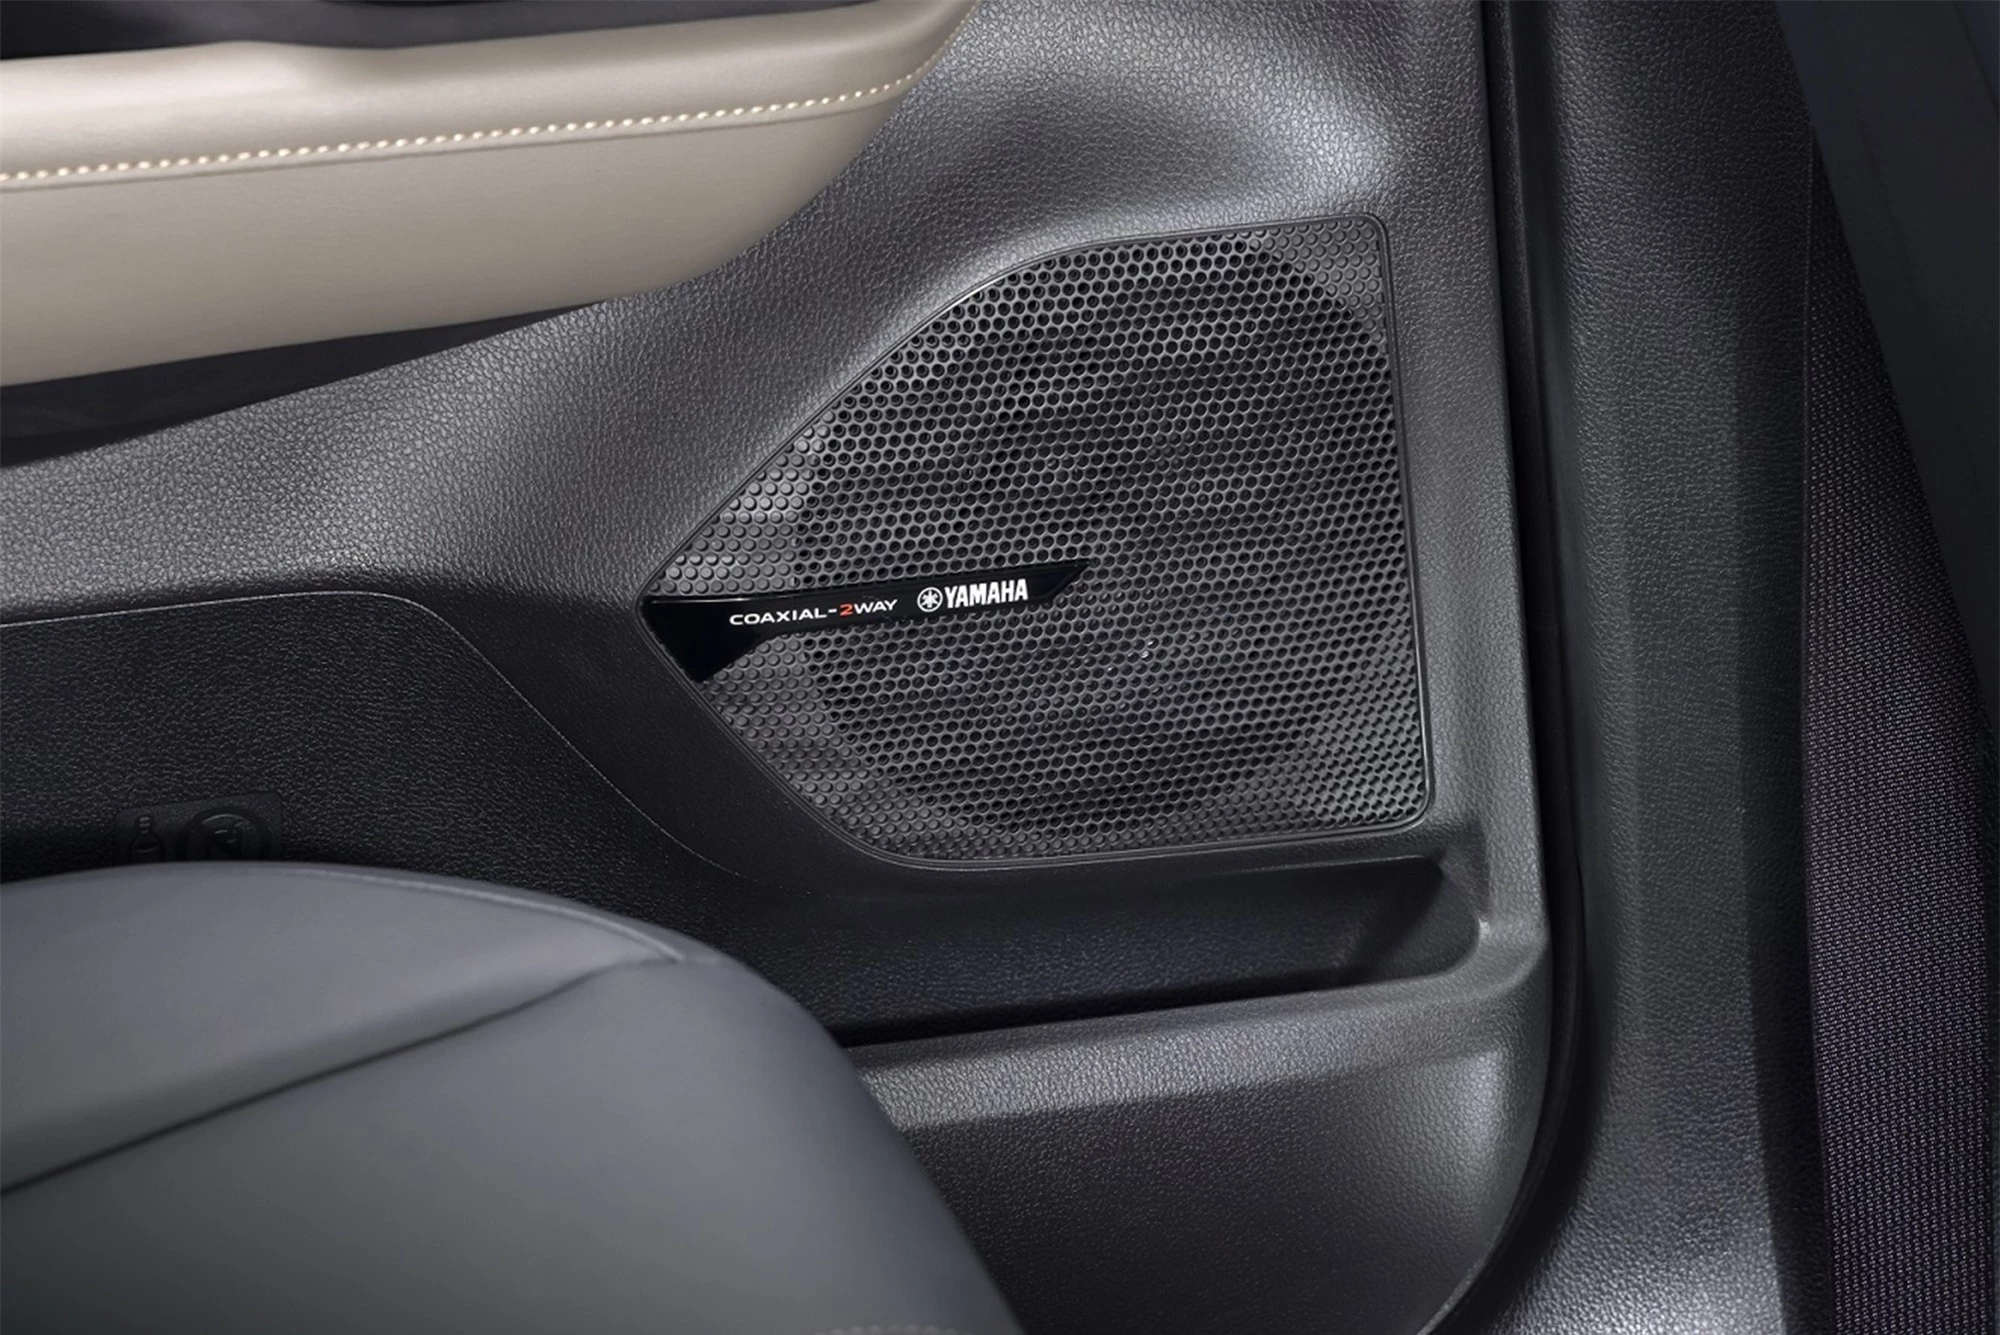 Liputan6: Hệ thống âm thanh Yamaha Premium Dynamics Sound được tích hợp trong Mitsubishi Xforce chưa từng gây thất vọng khi bật các bài hát thuộc nhiều thể loại khác nhau. Không những có thể điều chỉnh âm thanh đầu ra với 4 chế độ, dàn loa này còn có thể chỉnh theo tốc độ của xe, điều kiện đường sá thông qua tính năng Speed Compensated Volume với 5 cấp độ có thể lựa chọn. Tính năng này giúp đẩy nhanh tốc độ bài hát khi tăng tốc, và chậm lại khi giảm tốc - Ảnh: Mitsubishi